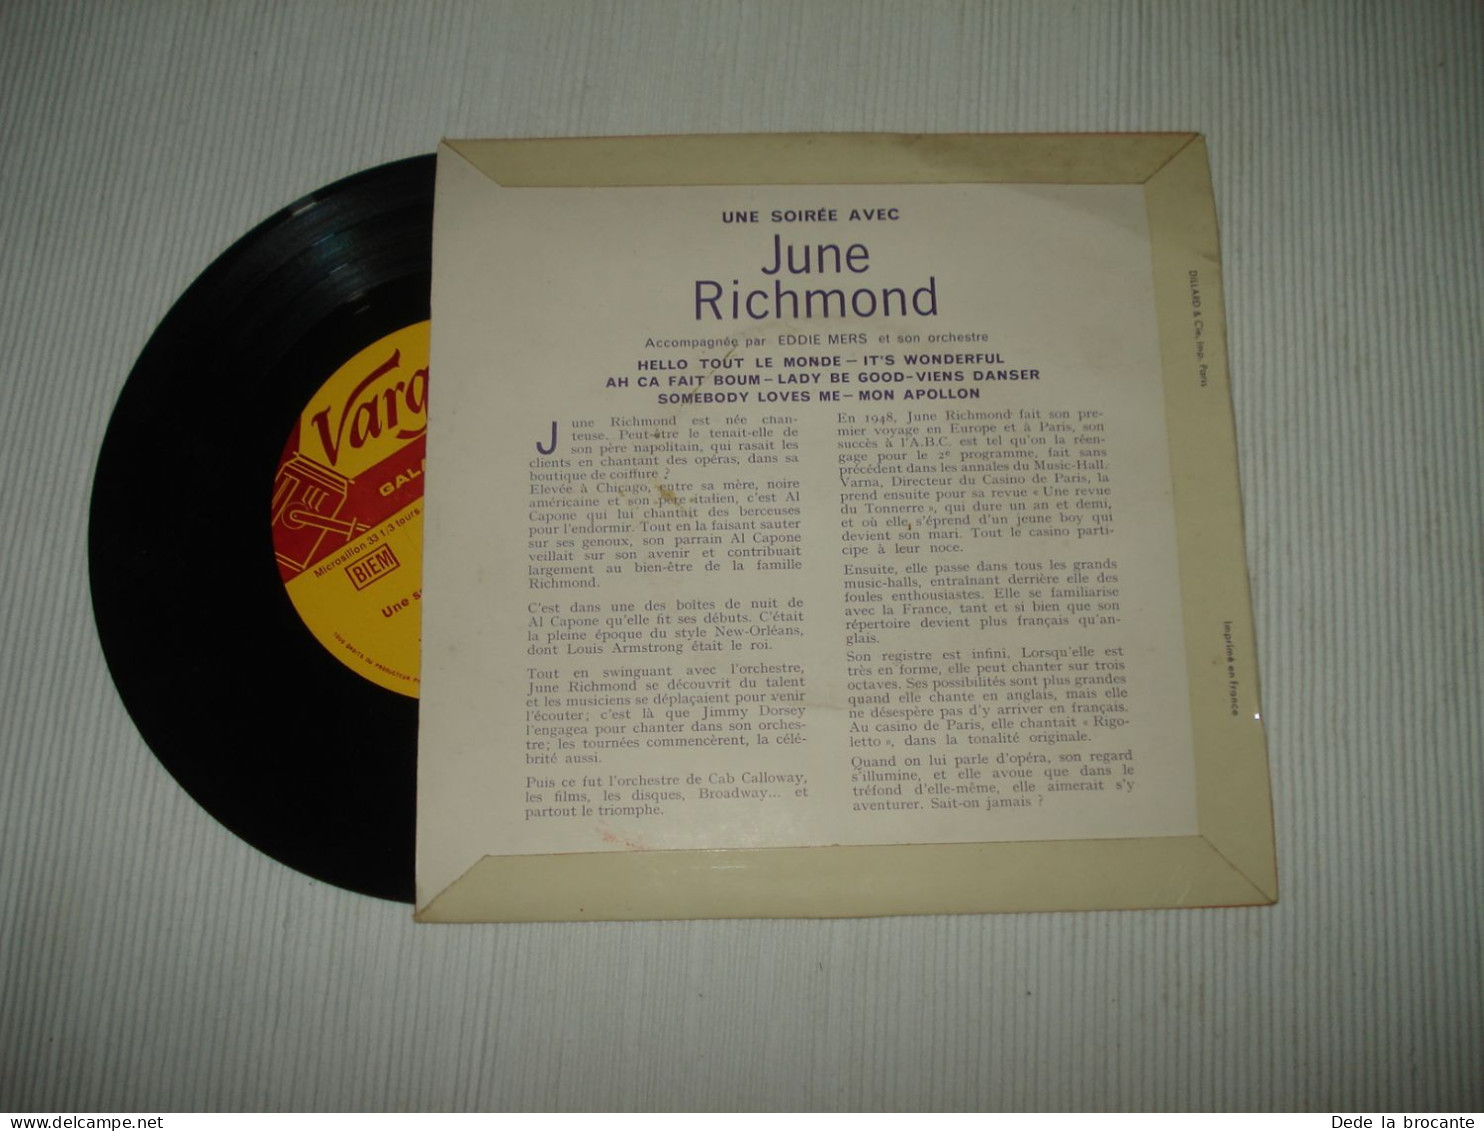 B13 / June Richmond – Une Soirée Avec... - 7"- 33 T - G-305 - FR 1961  EX/EX - Formatos Especiales